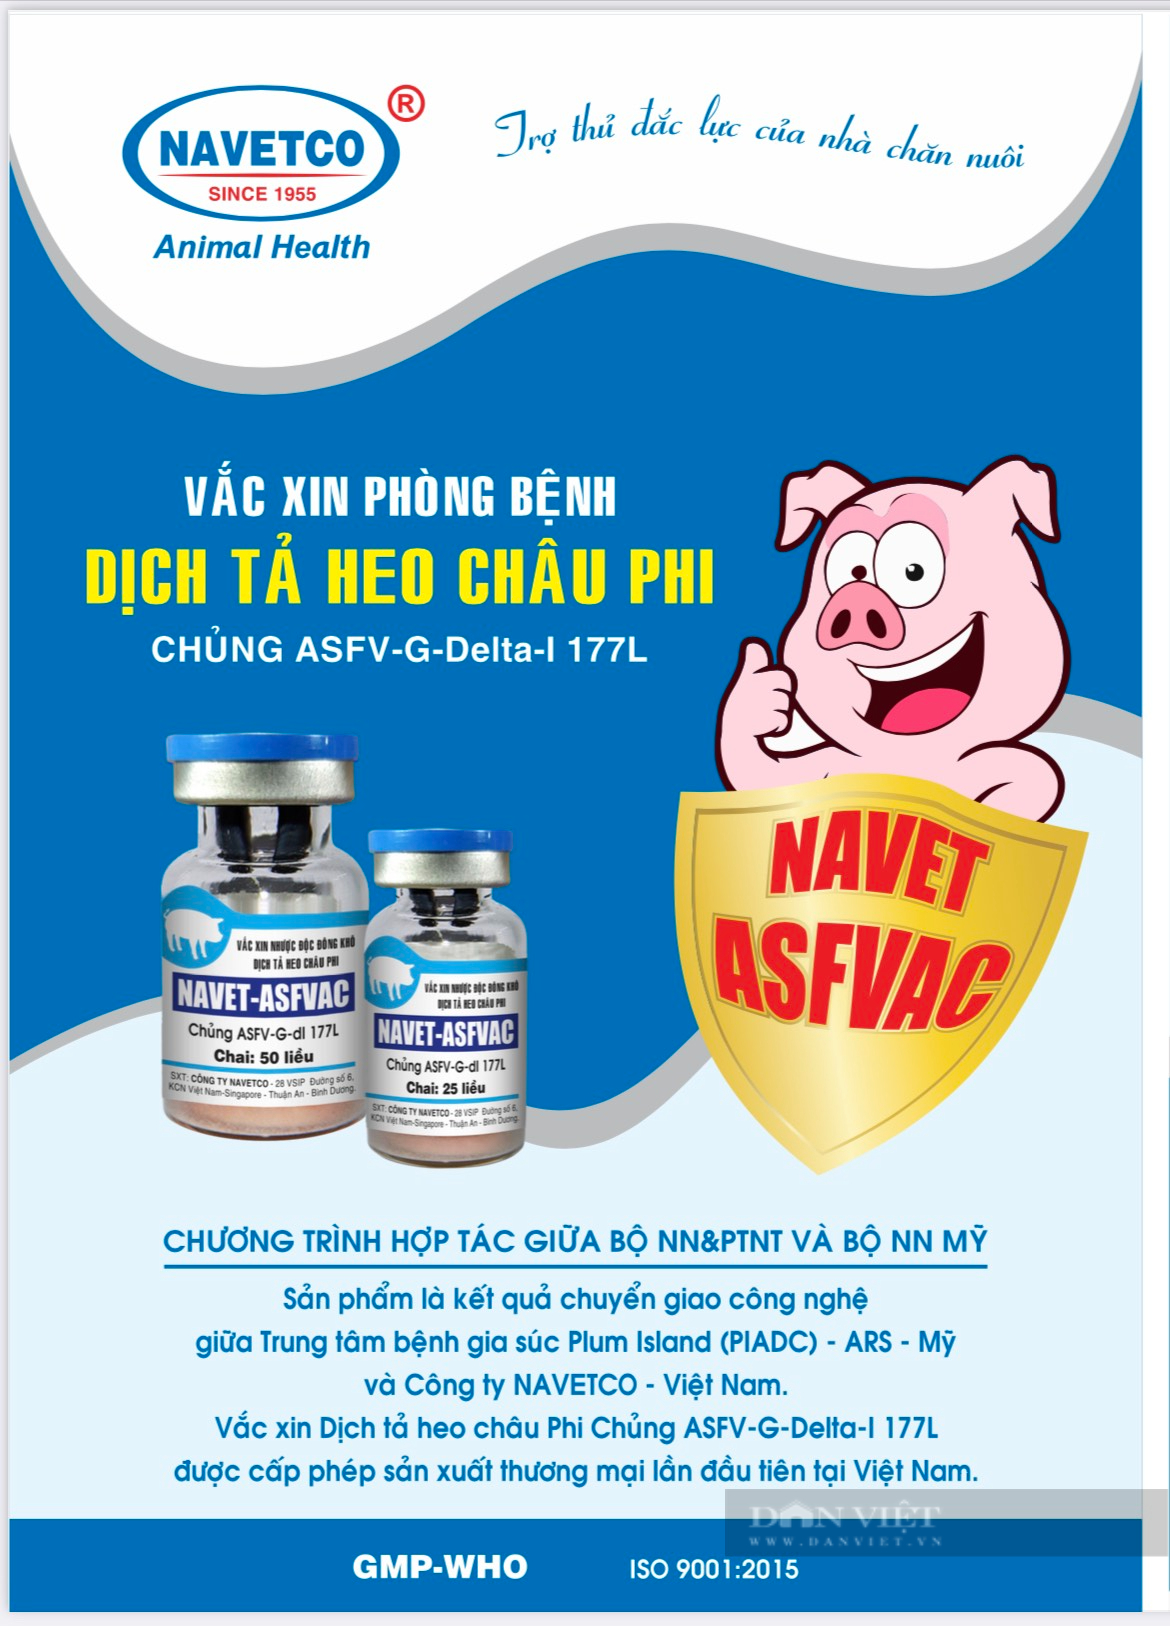 Tiêm phòng vaccine của Công ty Navetco lợn vẫn chết, Bình Định lệnh dừng tiêm phòng - Ảnh 2.